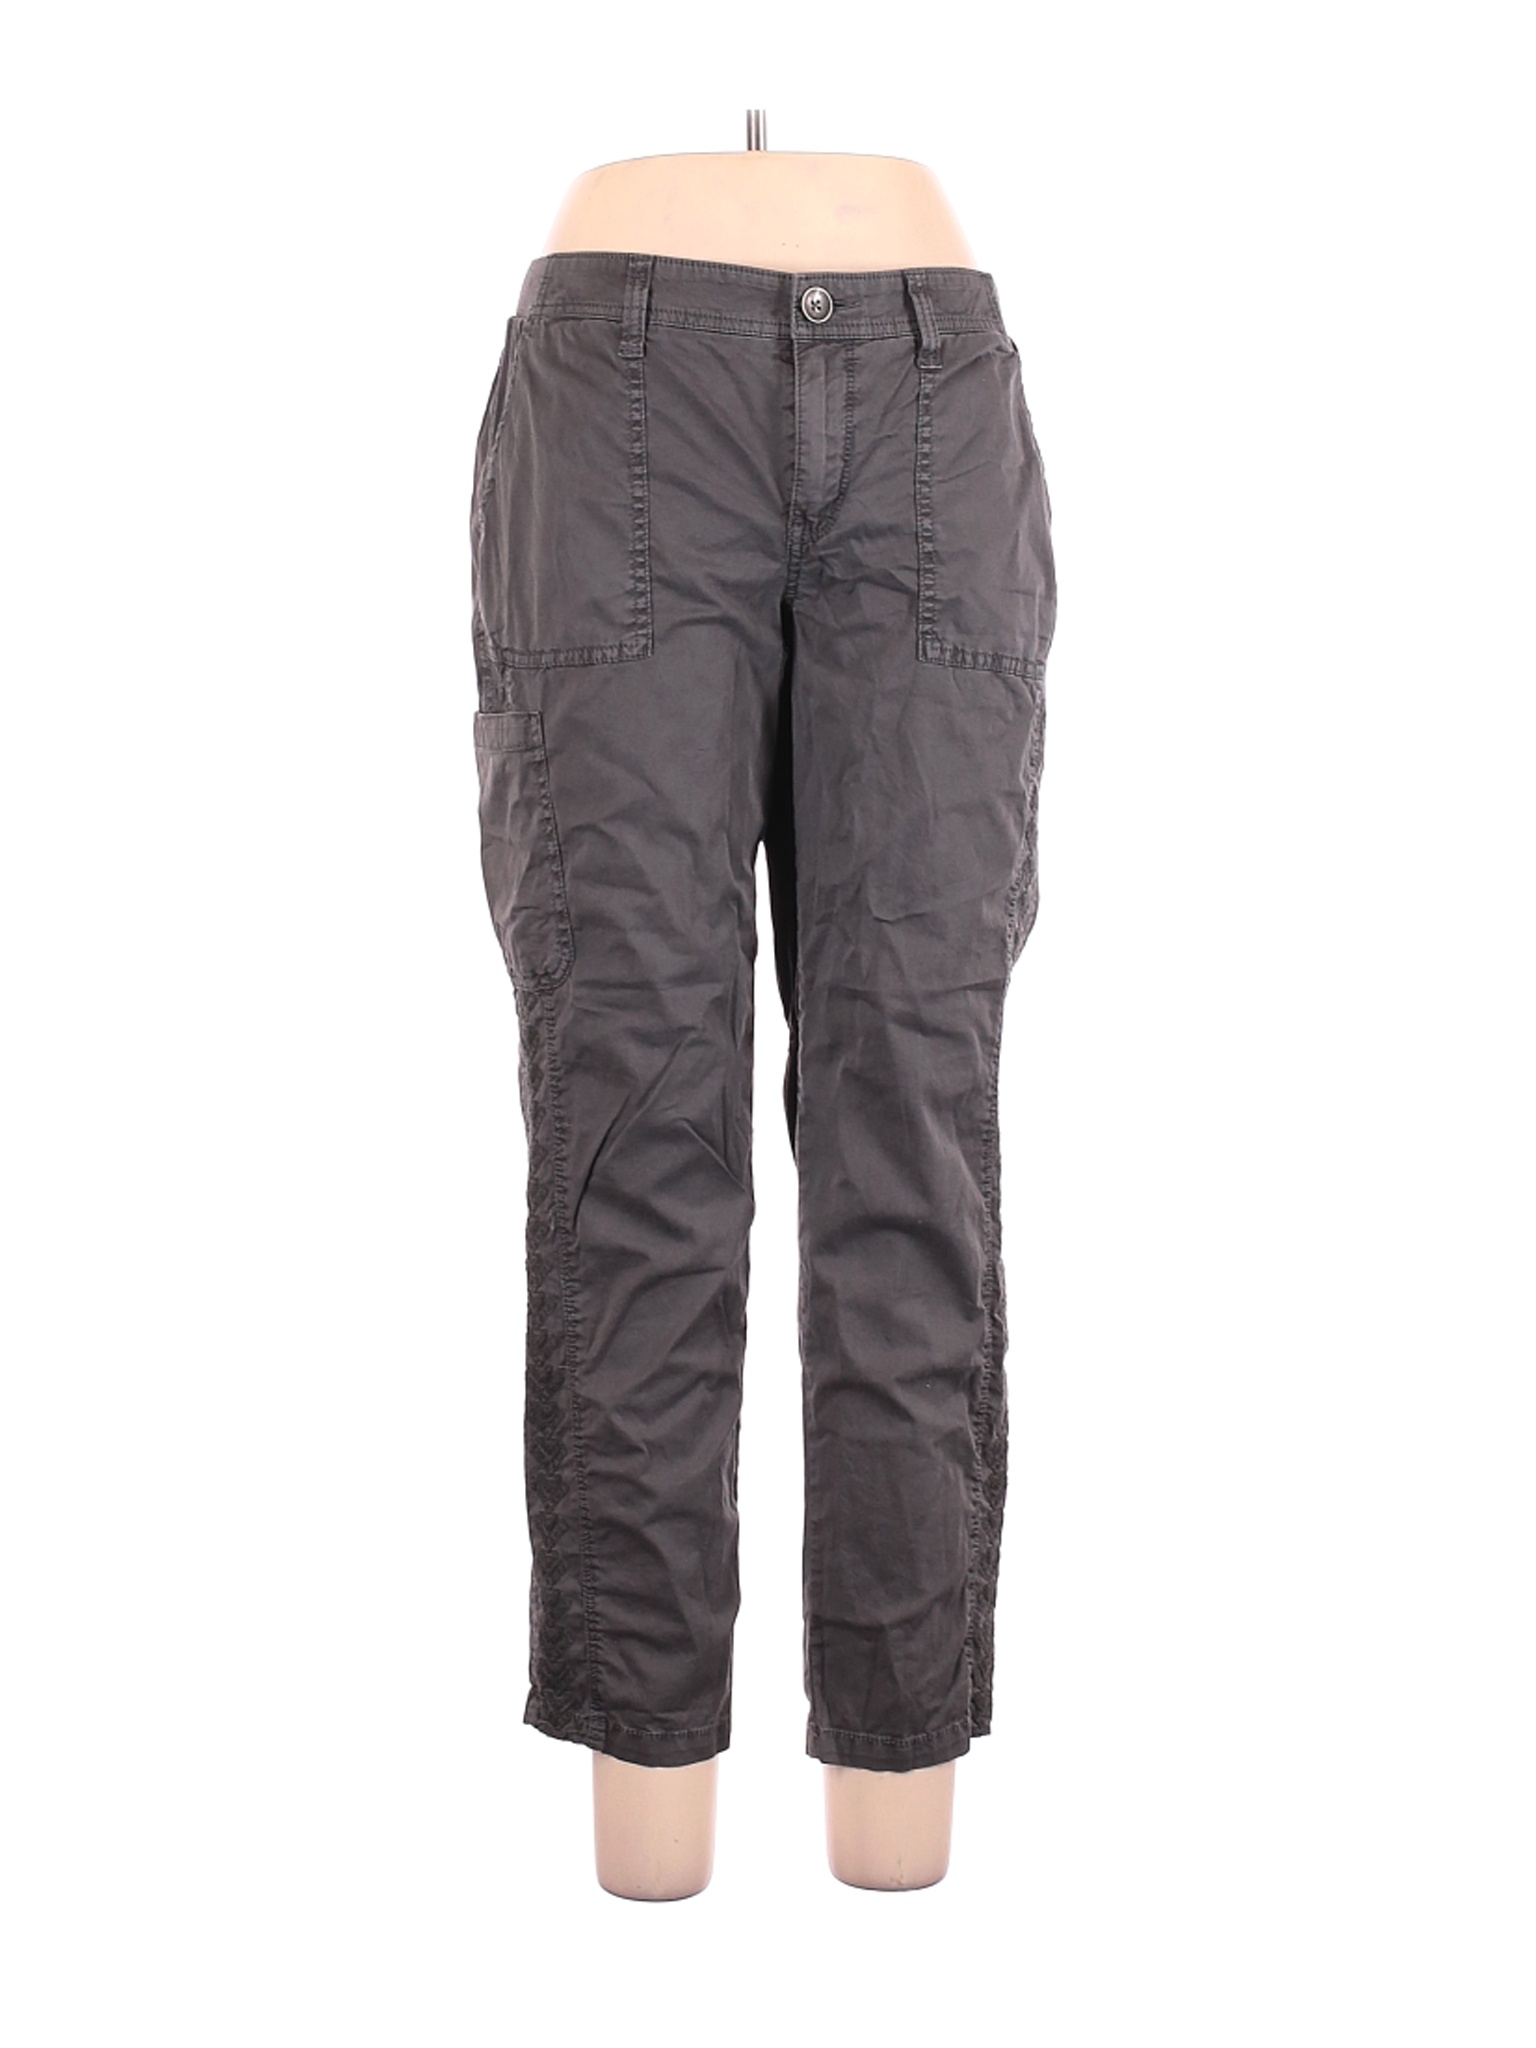 Sonoma Goods for Life Women Gray Cargo Pants 10 | eBay